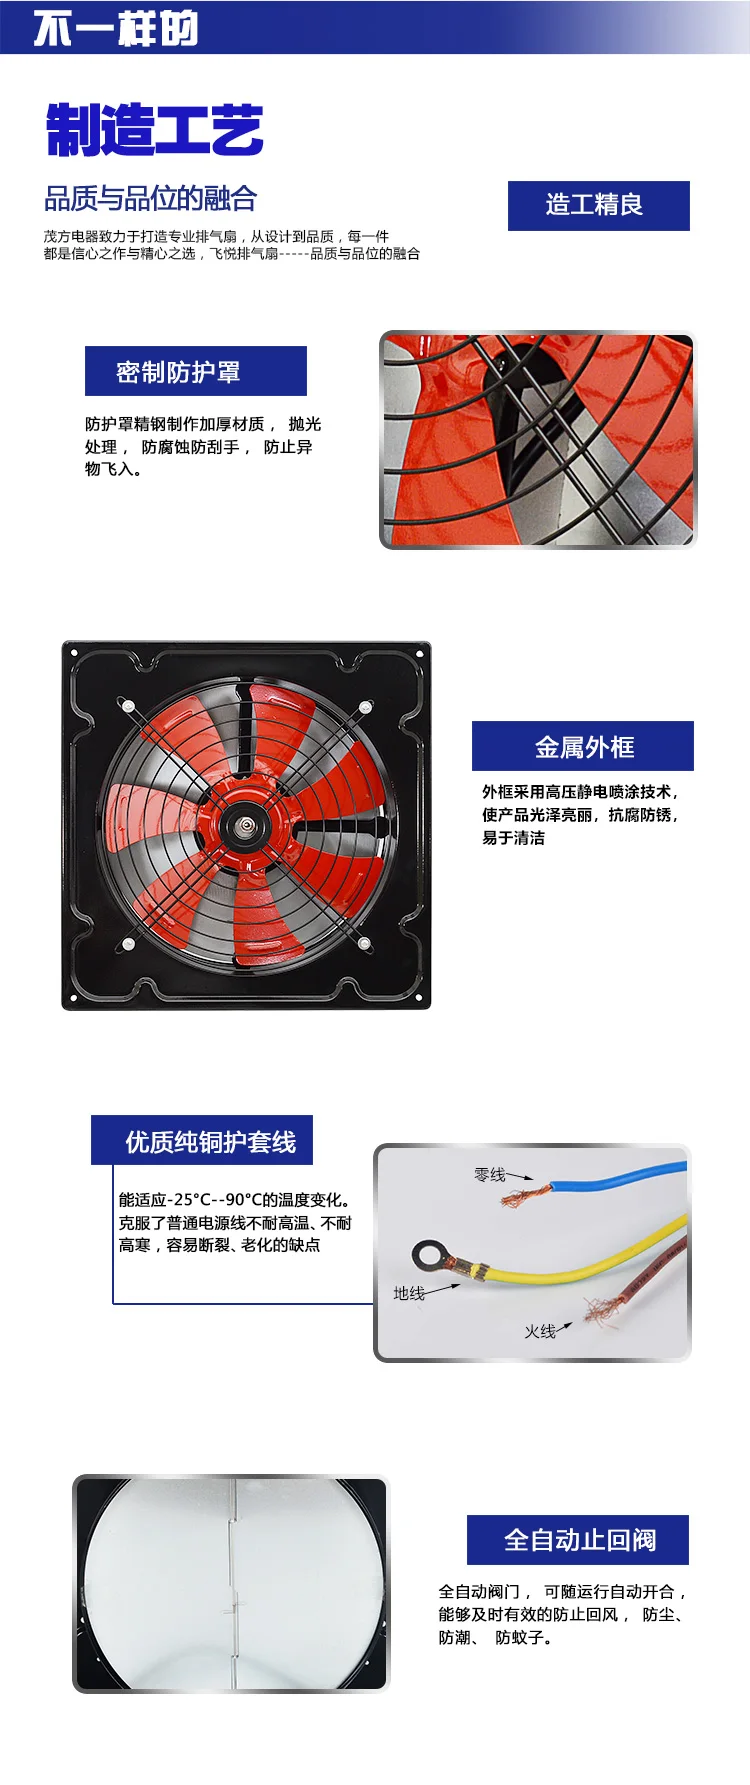 FONYES промышленный вытяжной вентилятор, кухонный испаритель, вытяжной вентилятор, настенный вентилятор, мощный высокоскоростной вентилятор, 14 дюймов